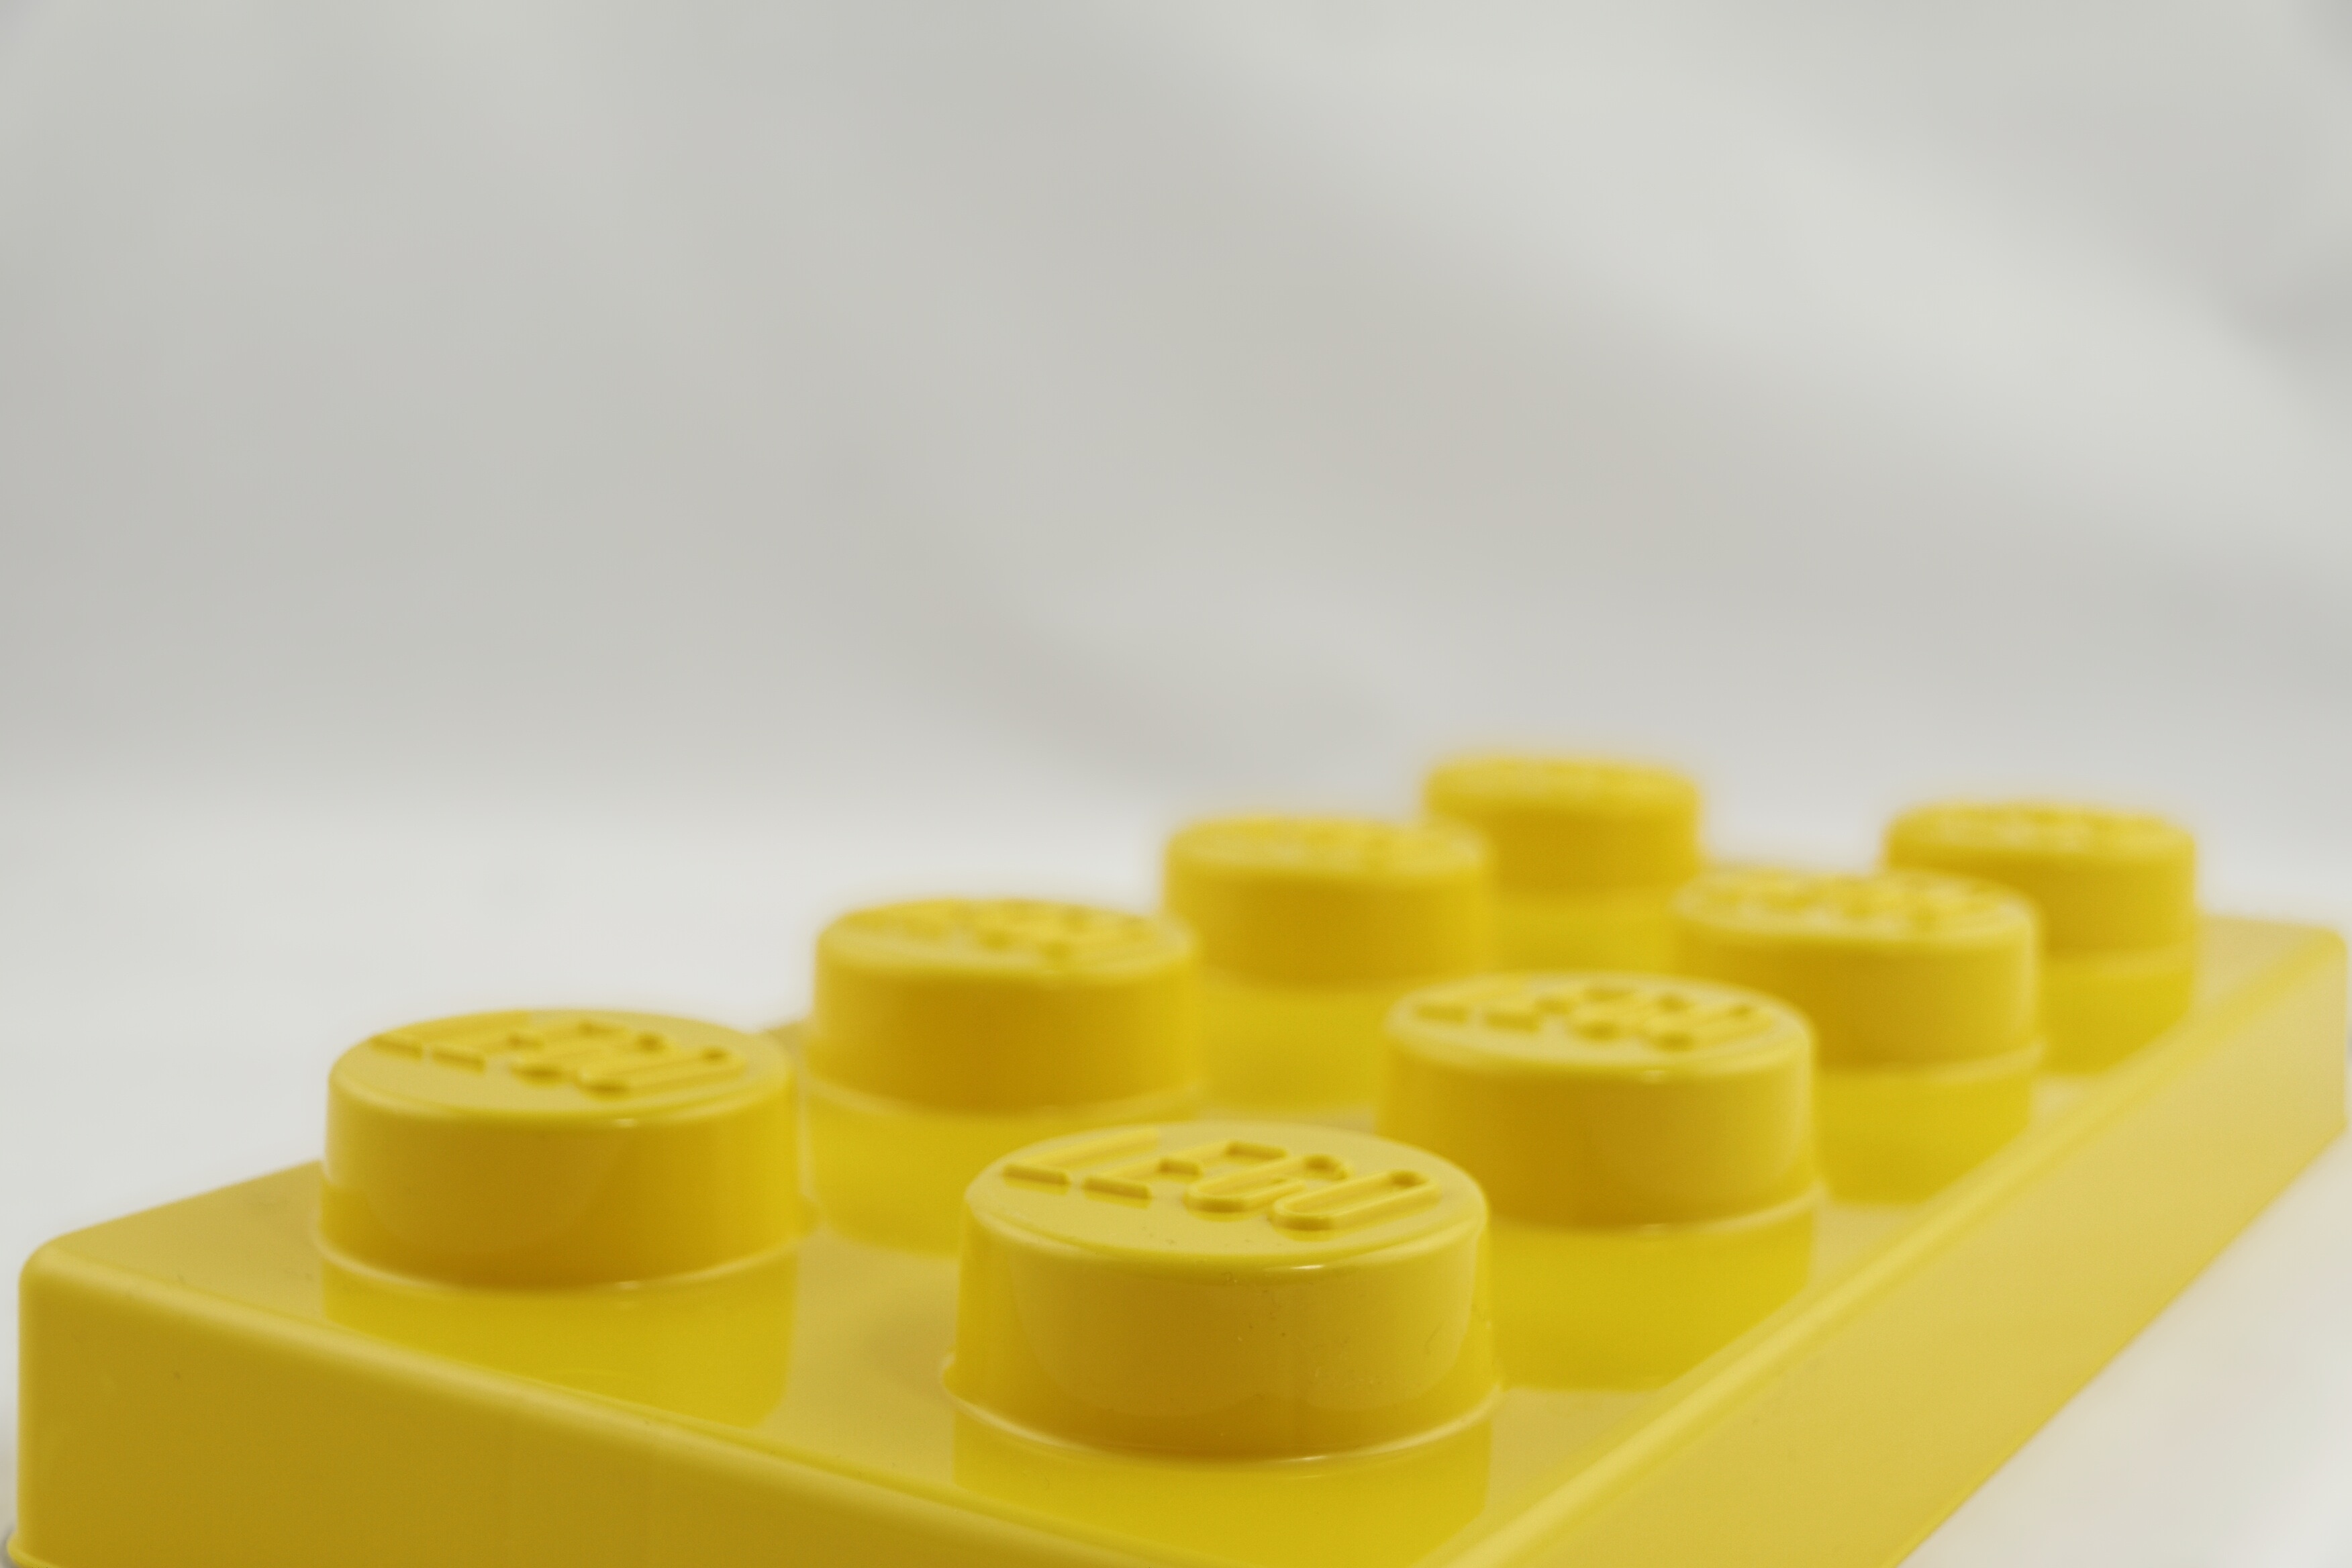 yellow plastic bloks toy